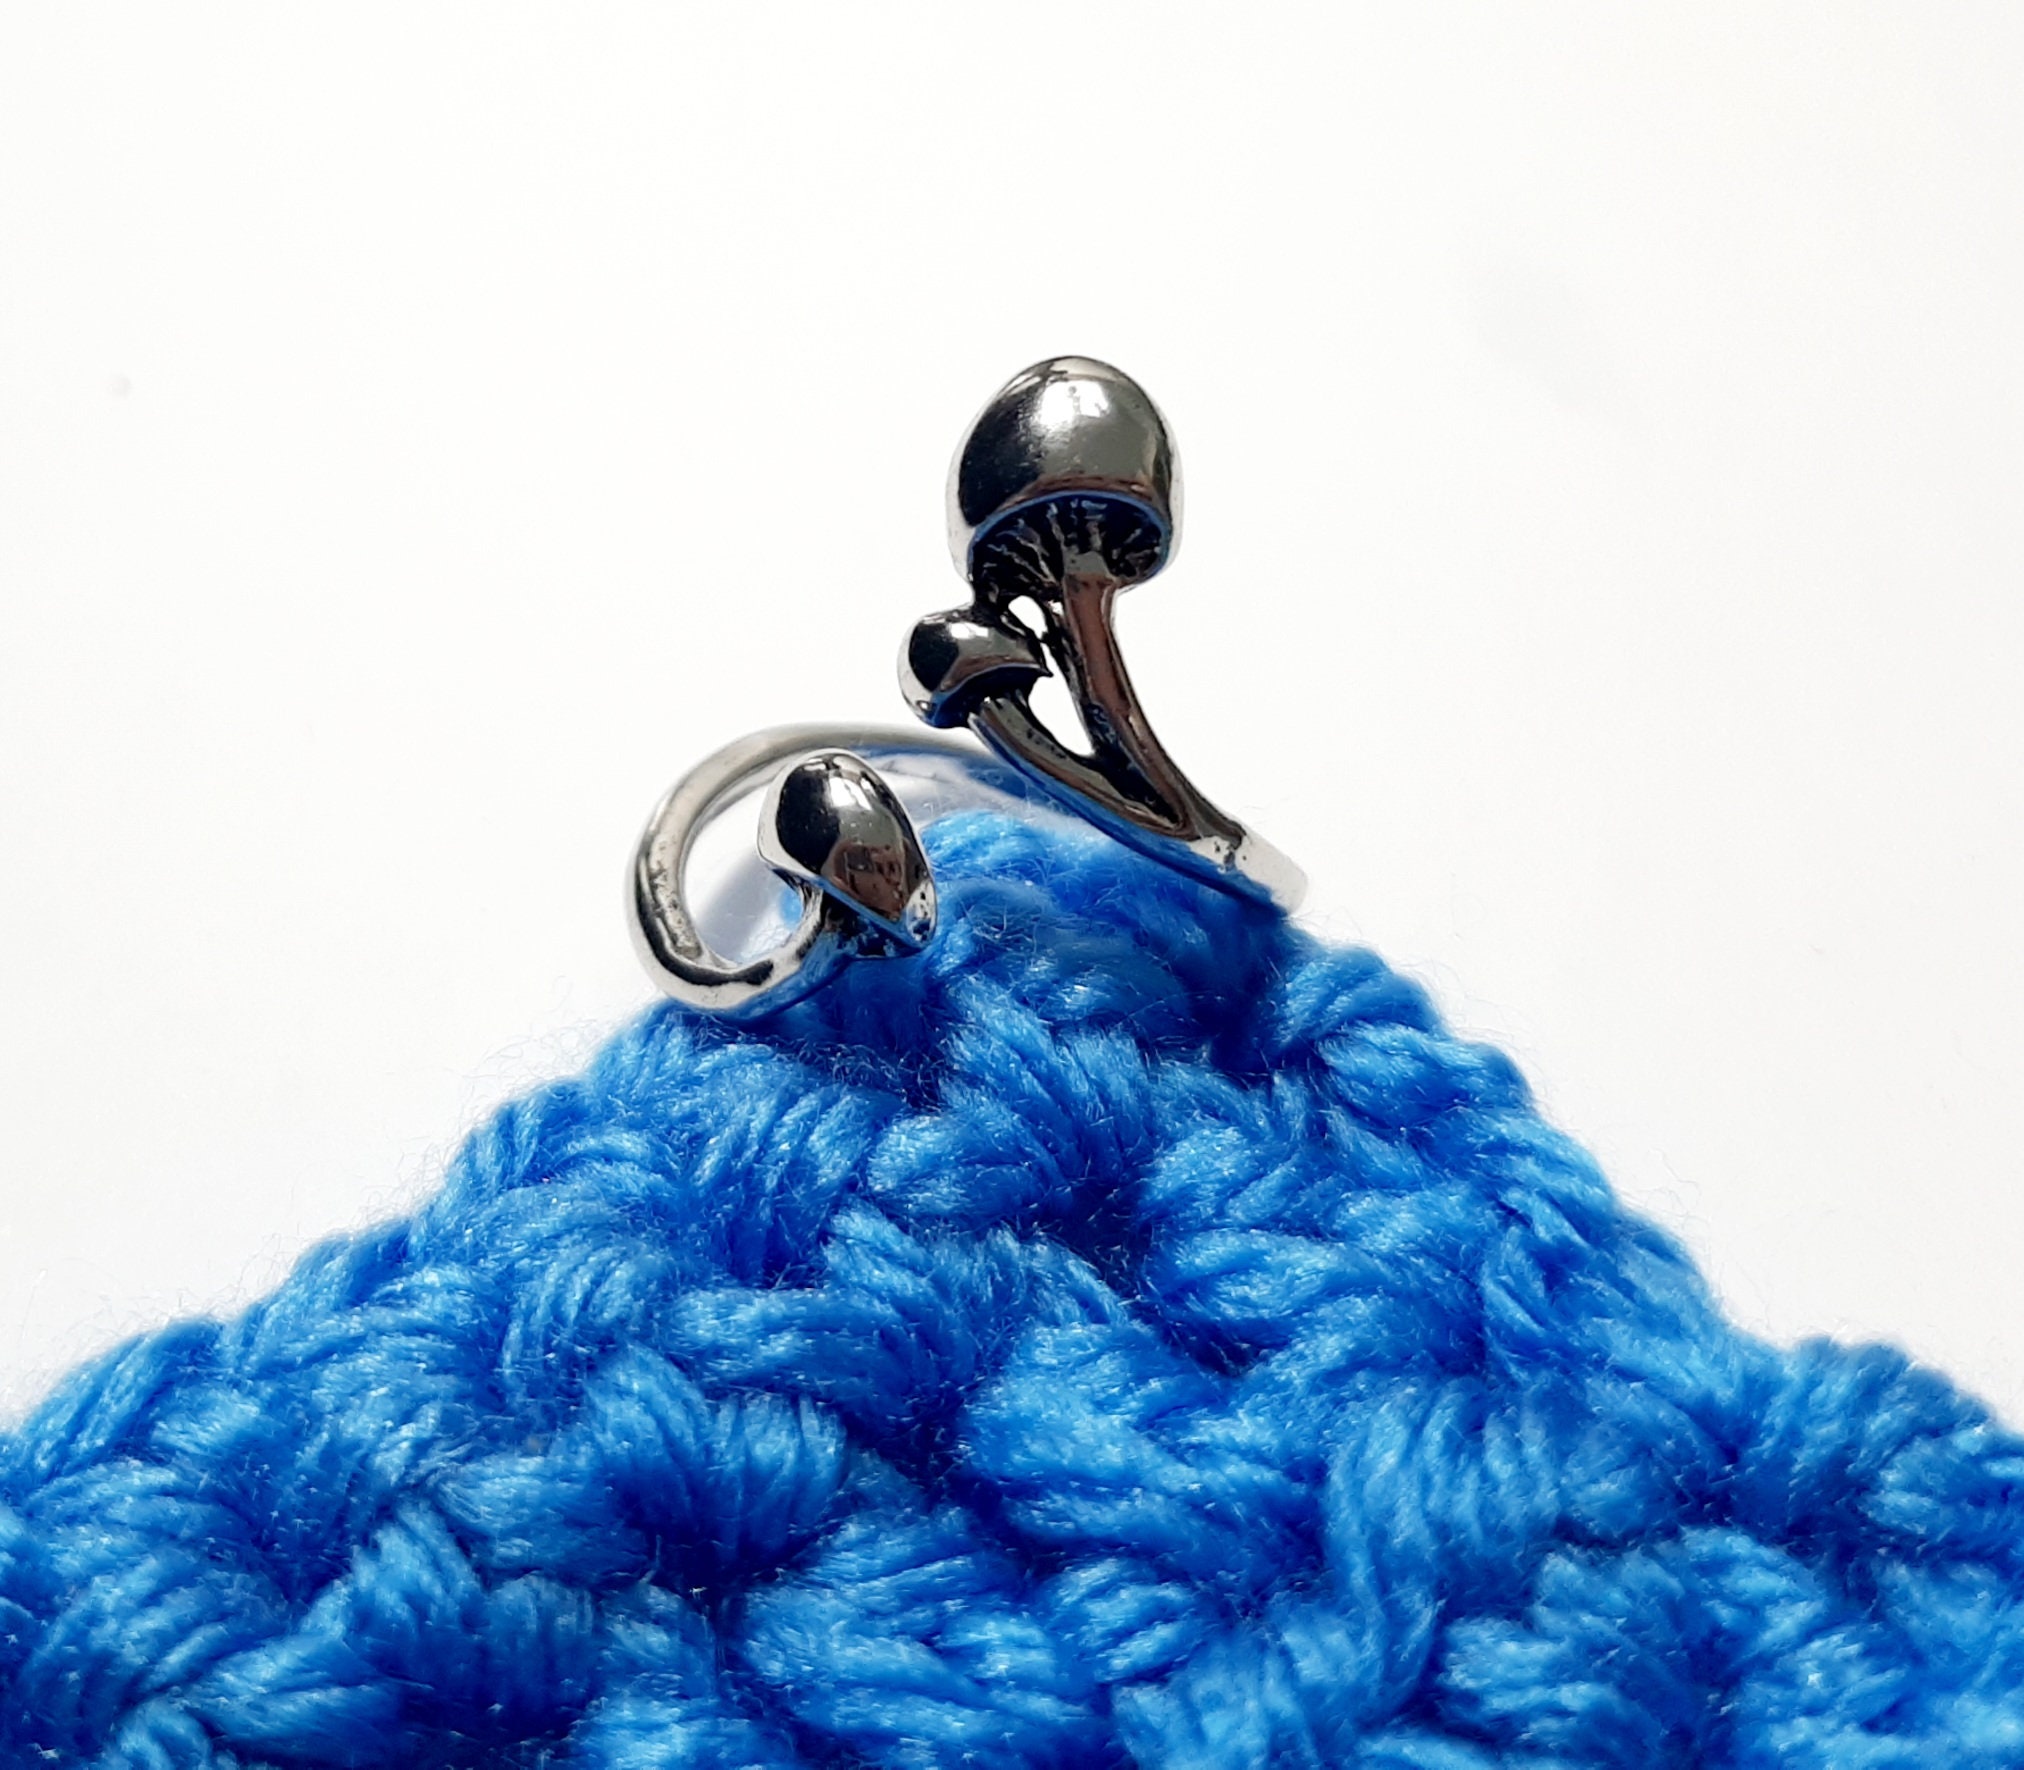 10 Pcs knitting& crochet supplies Yarn Stitch Holders Alloy Stitch